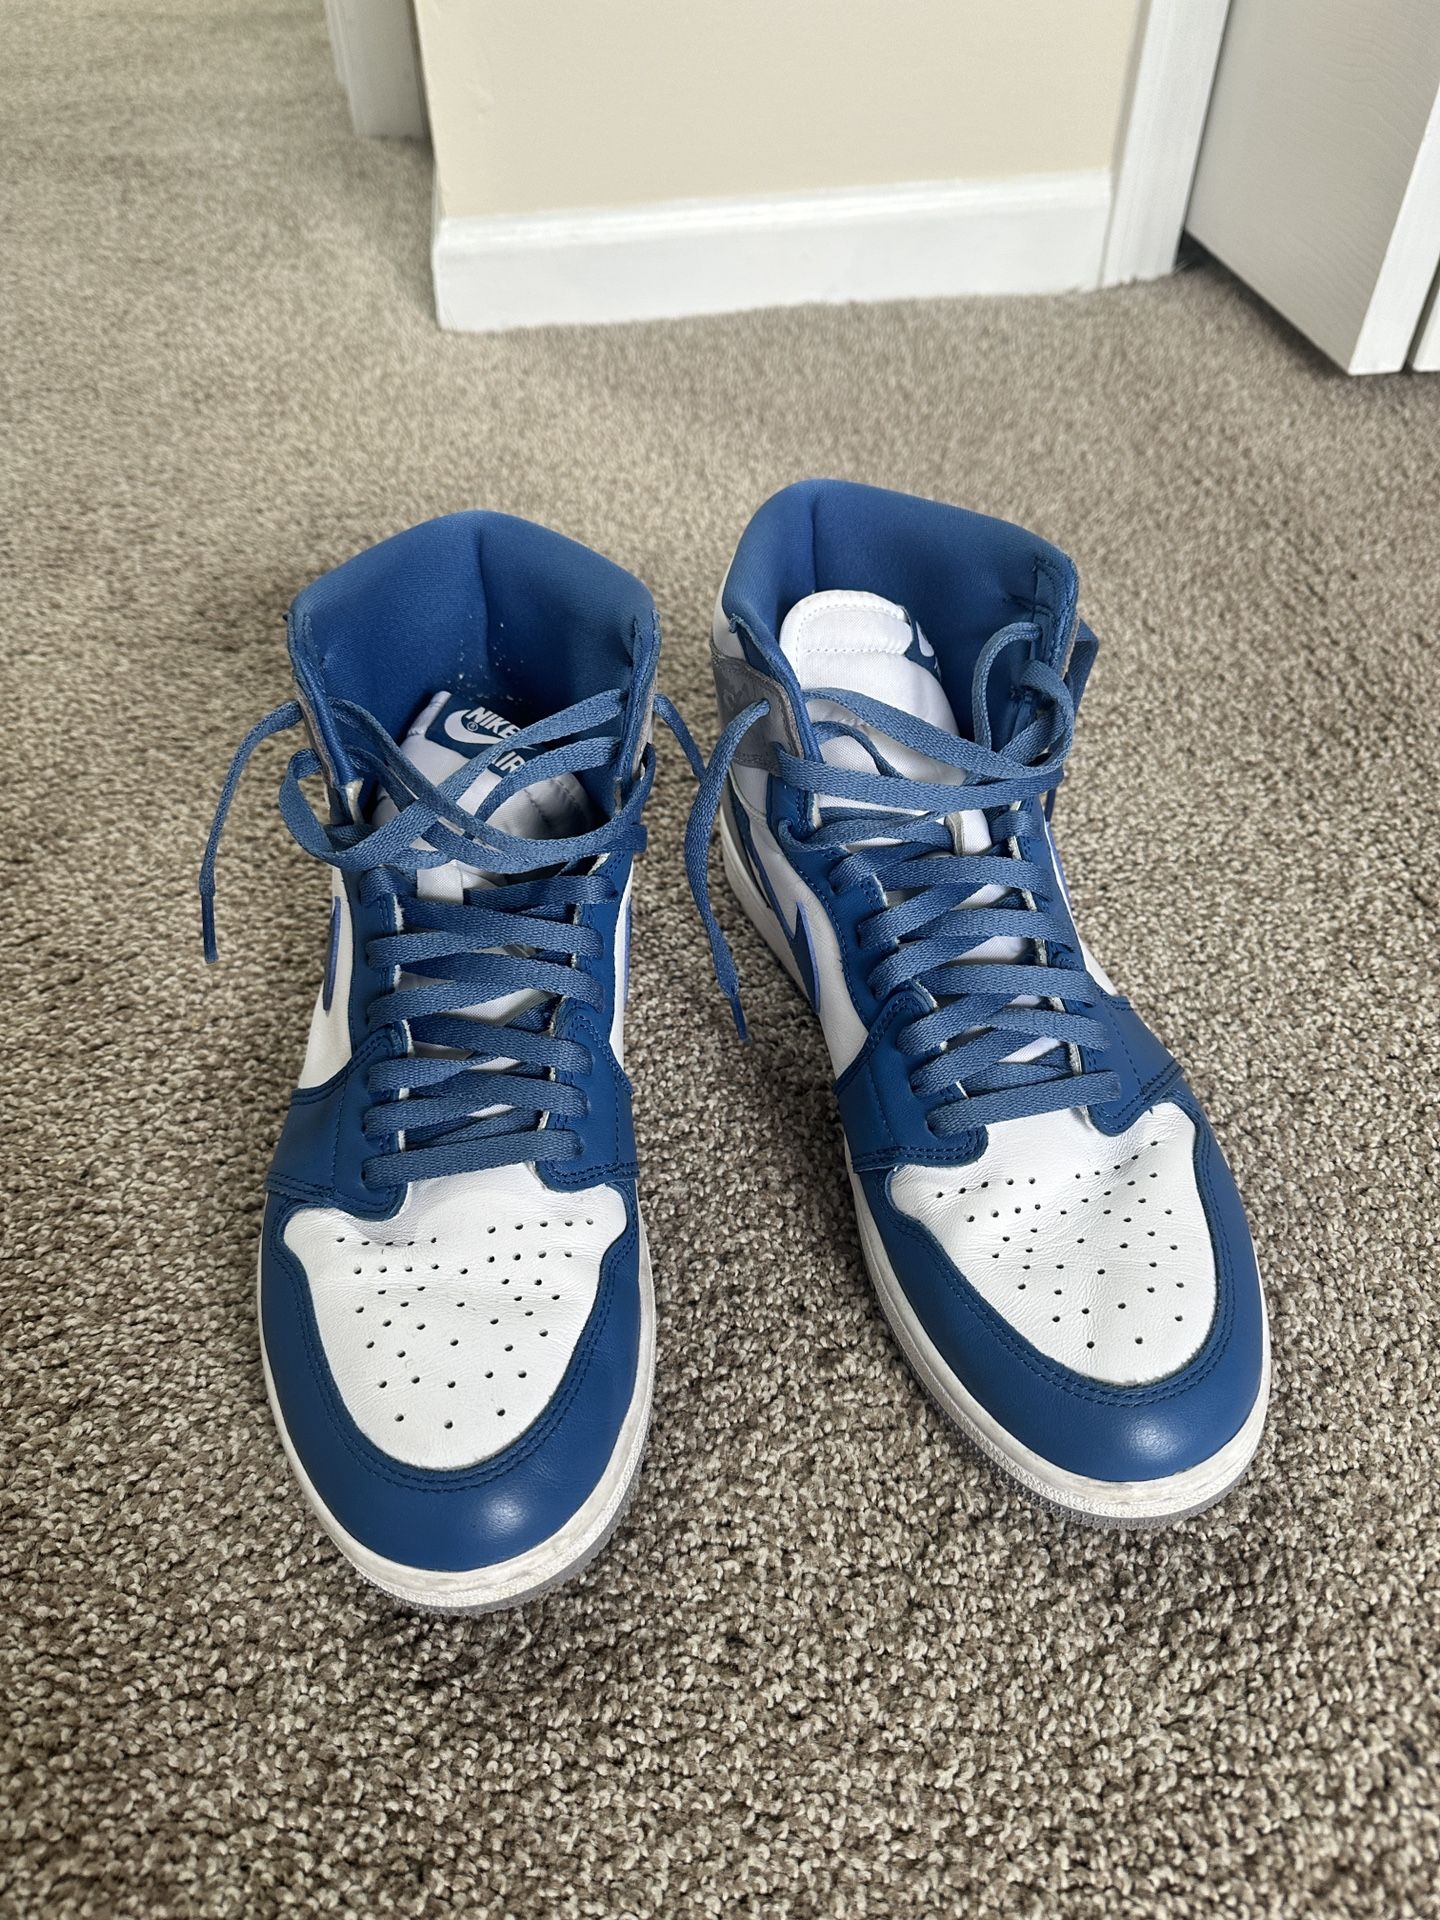 Jordan 1 True Blue Size 12.5